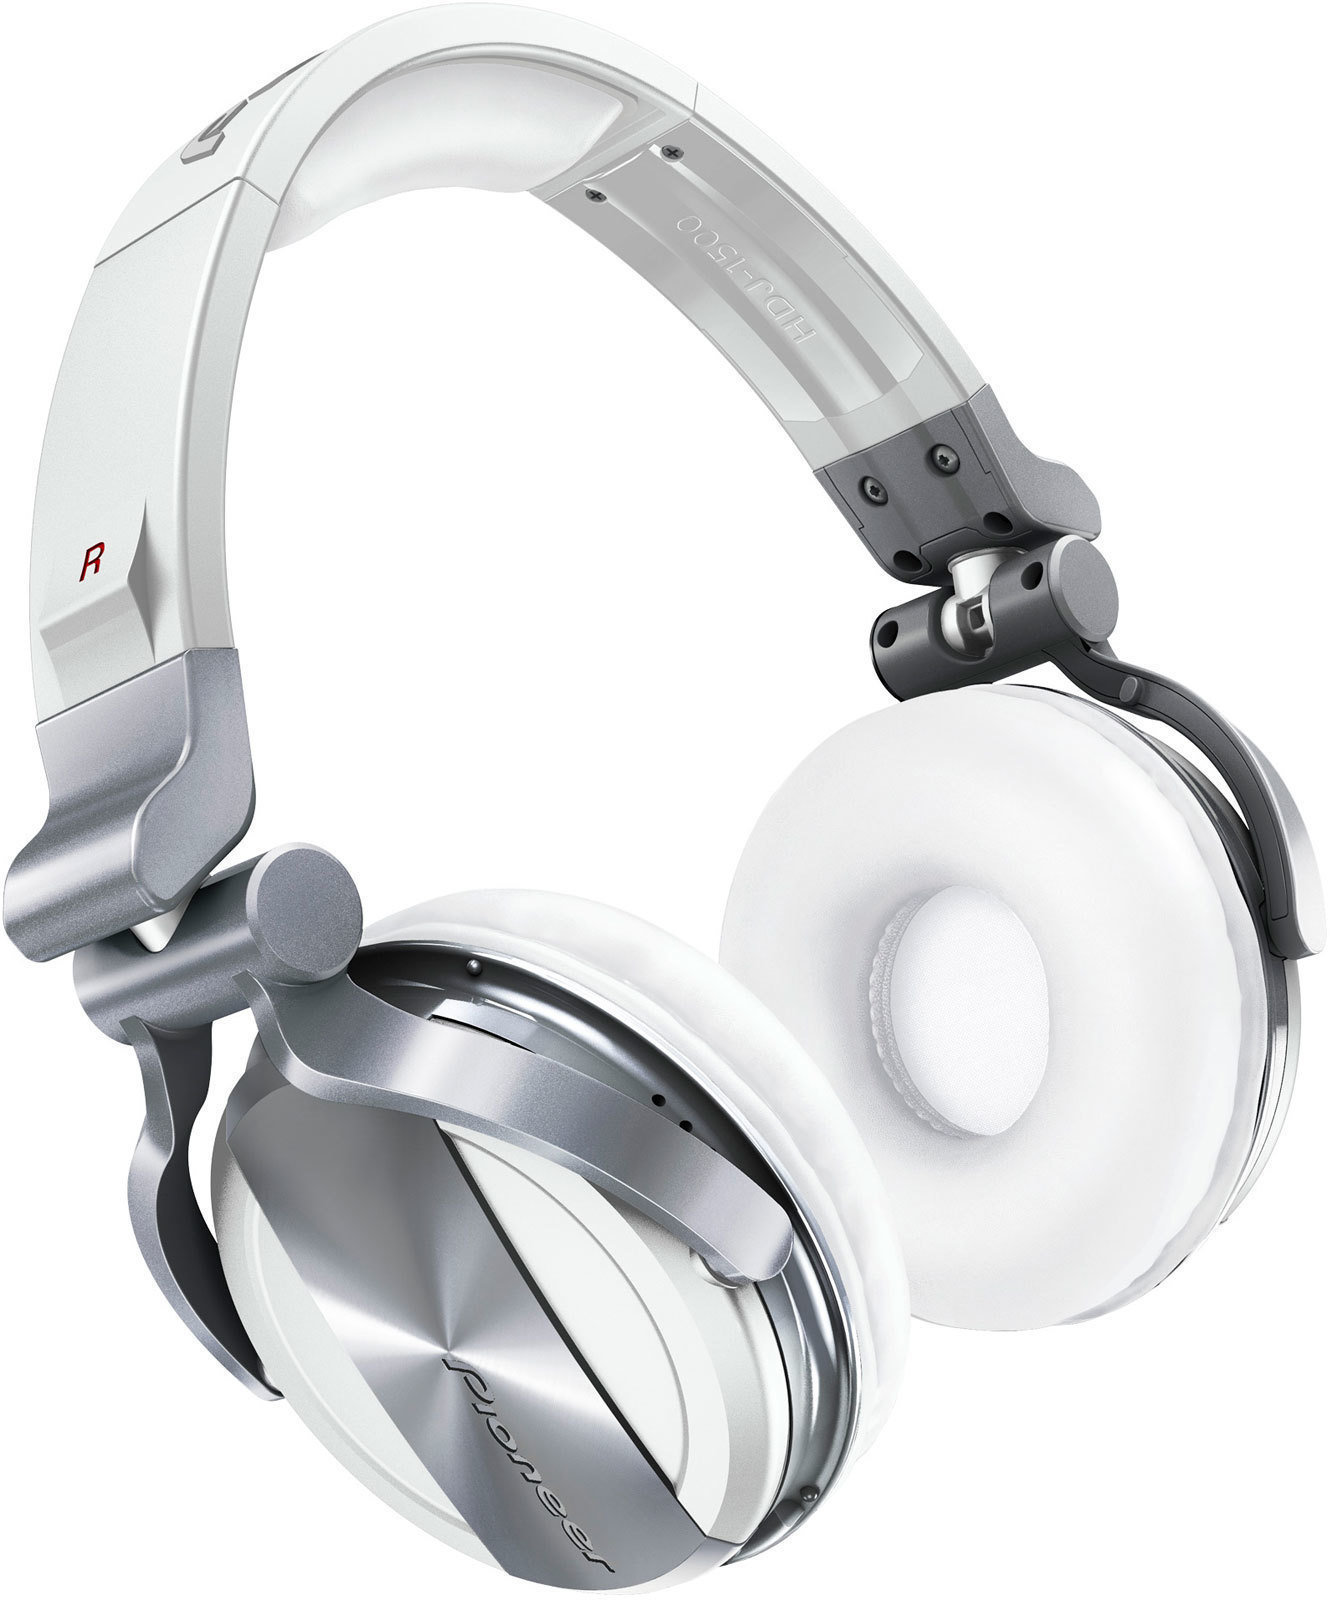 DJ Headphone Pioneer Dj HDJ-1500 White